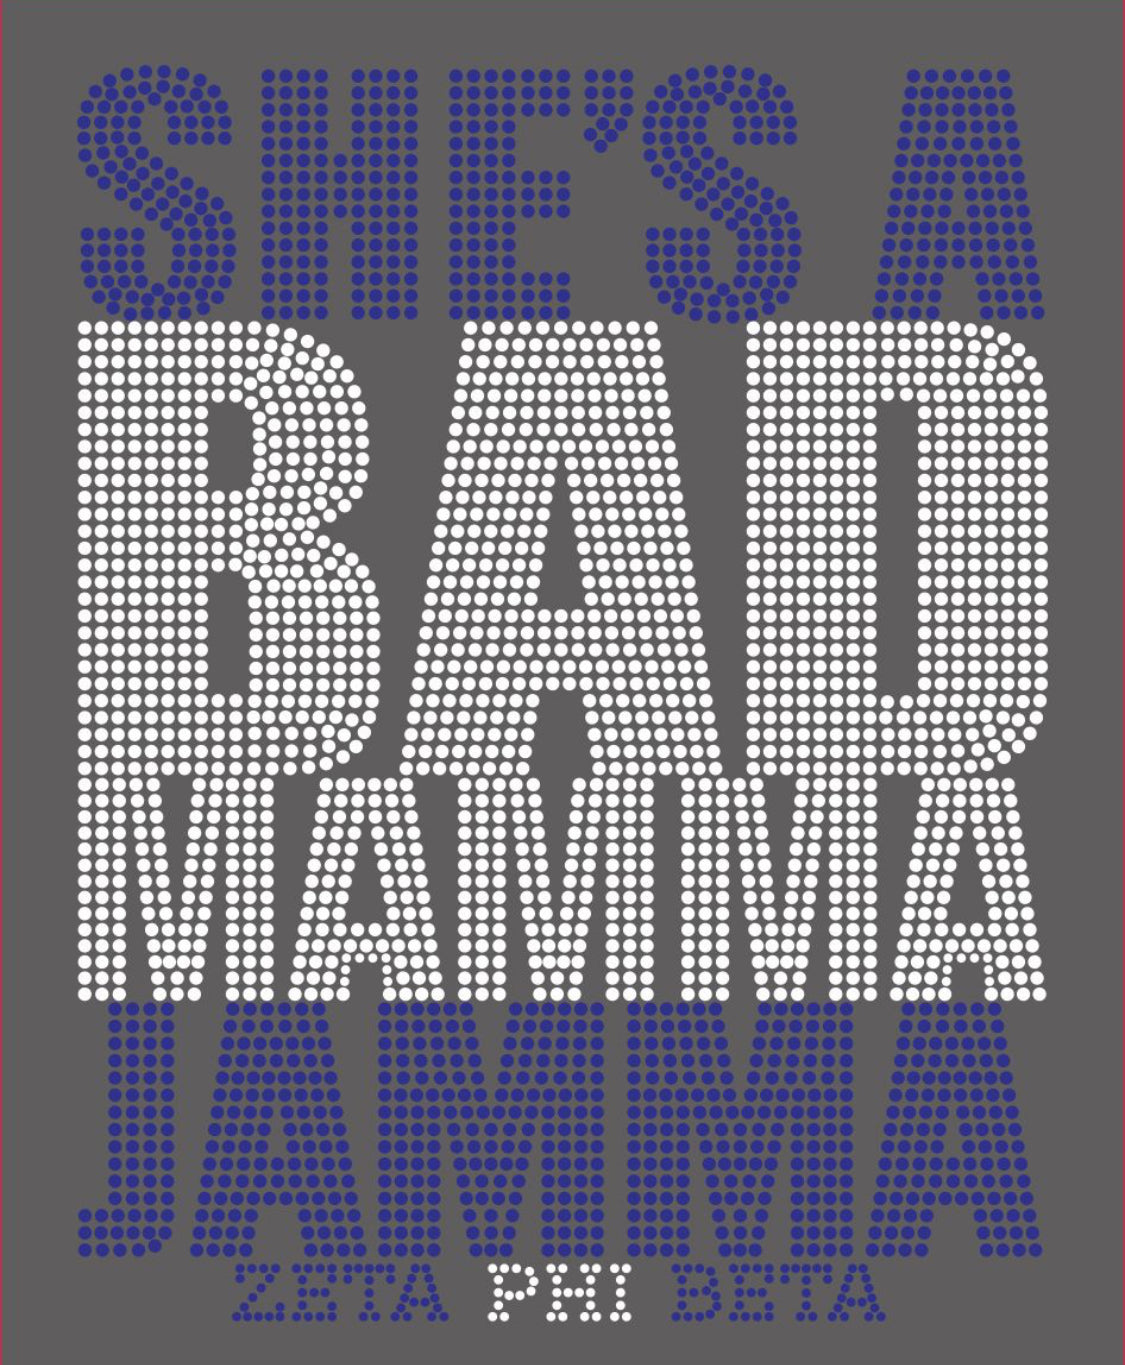 She’s a Bad Mamma Jamma